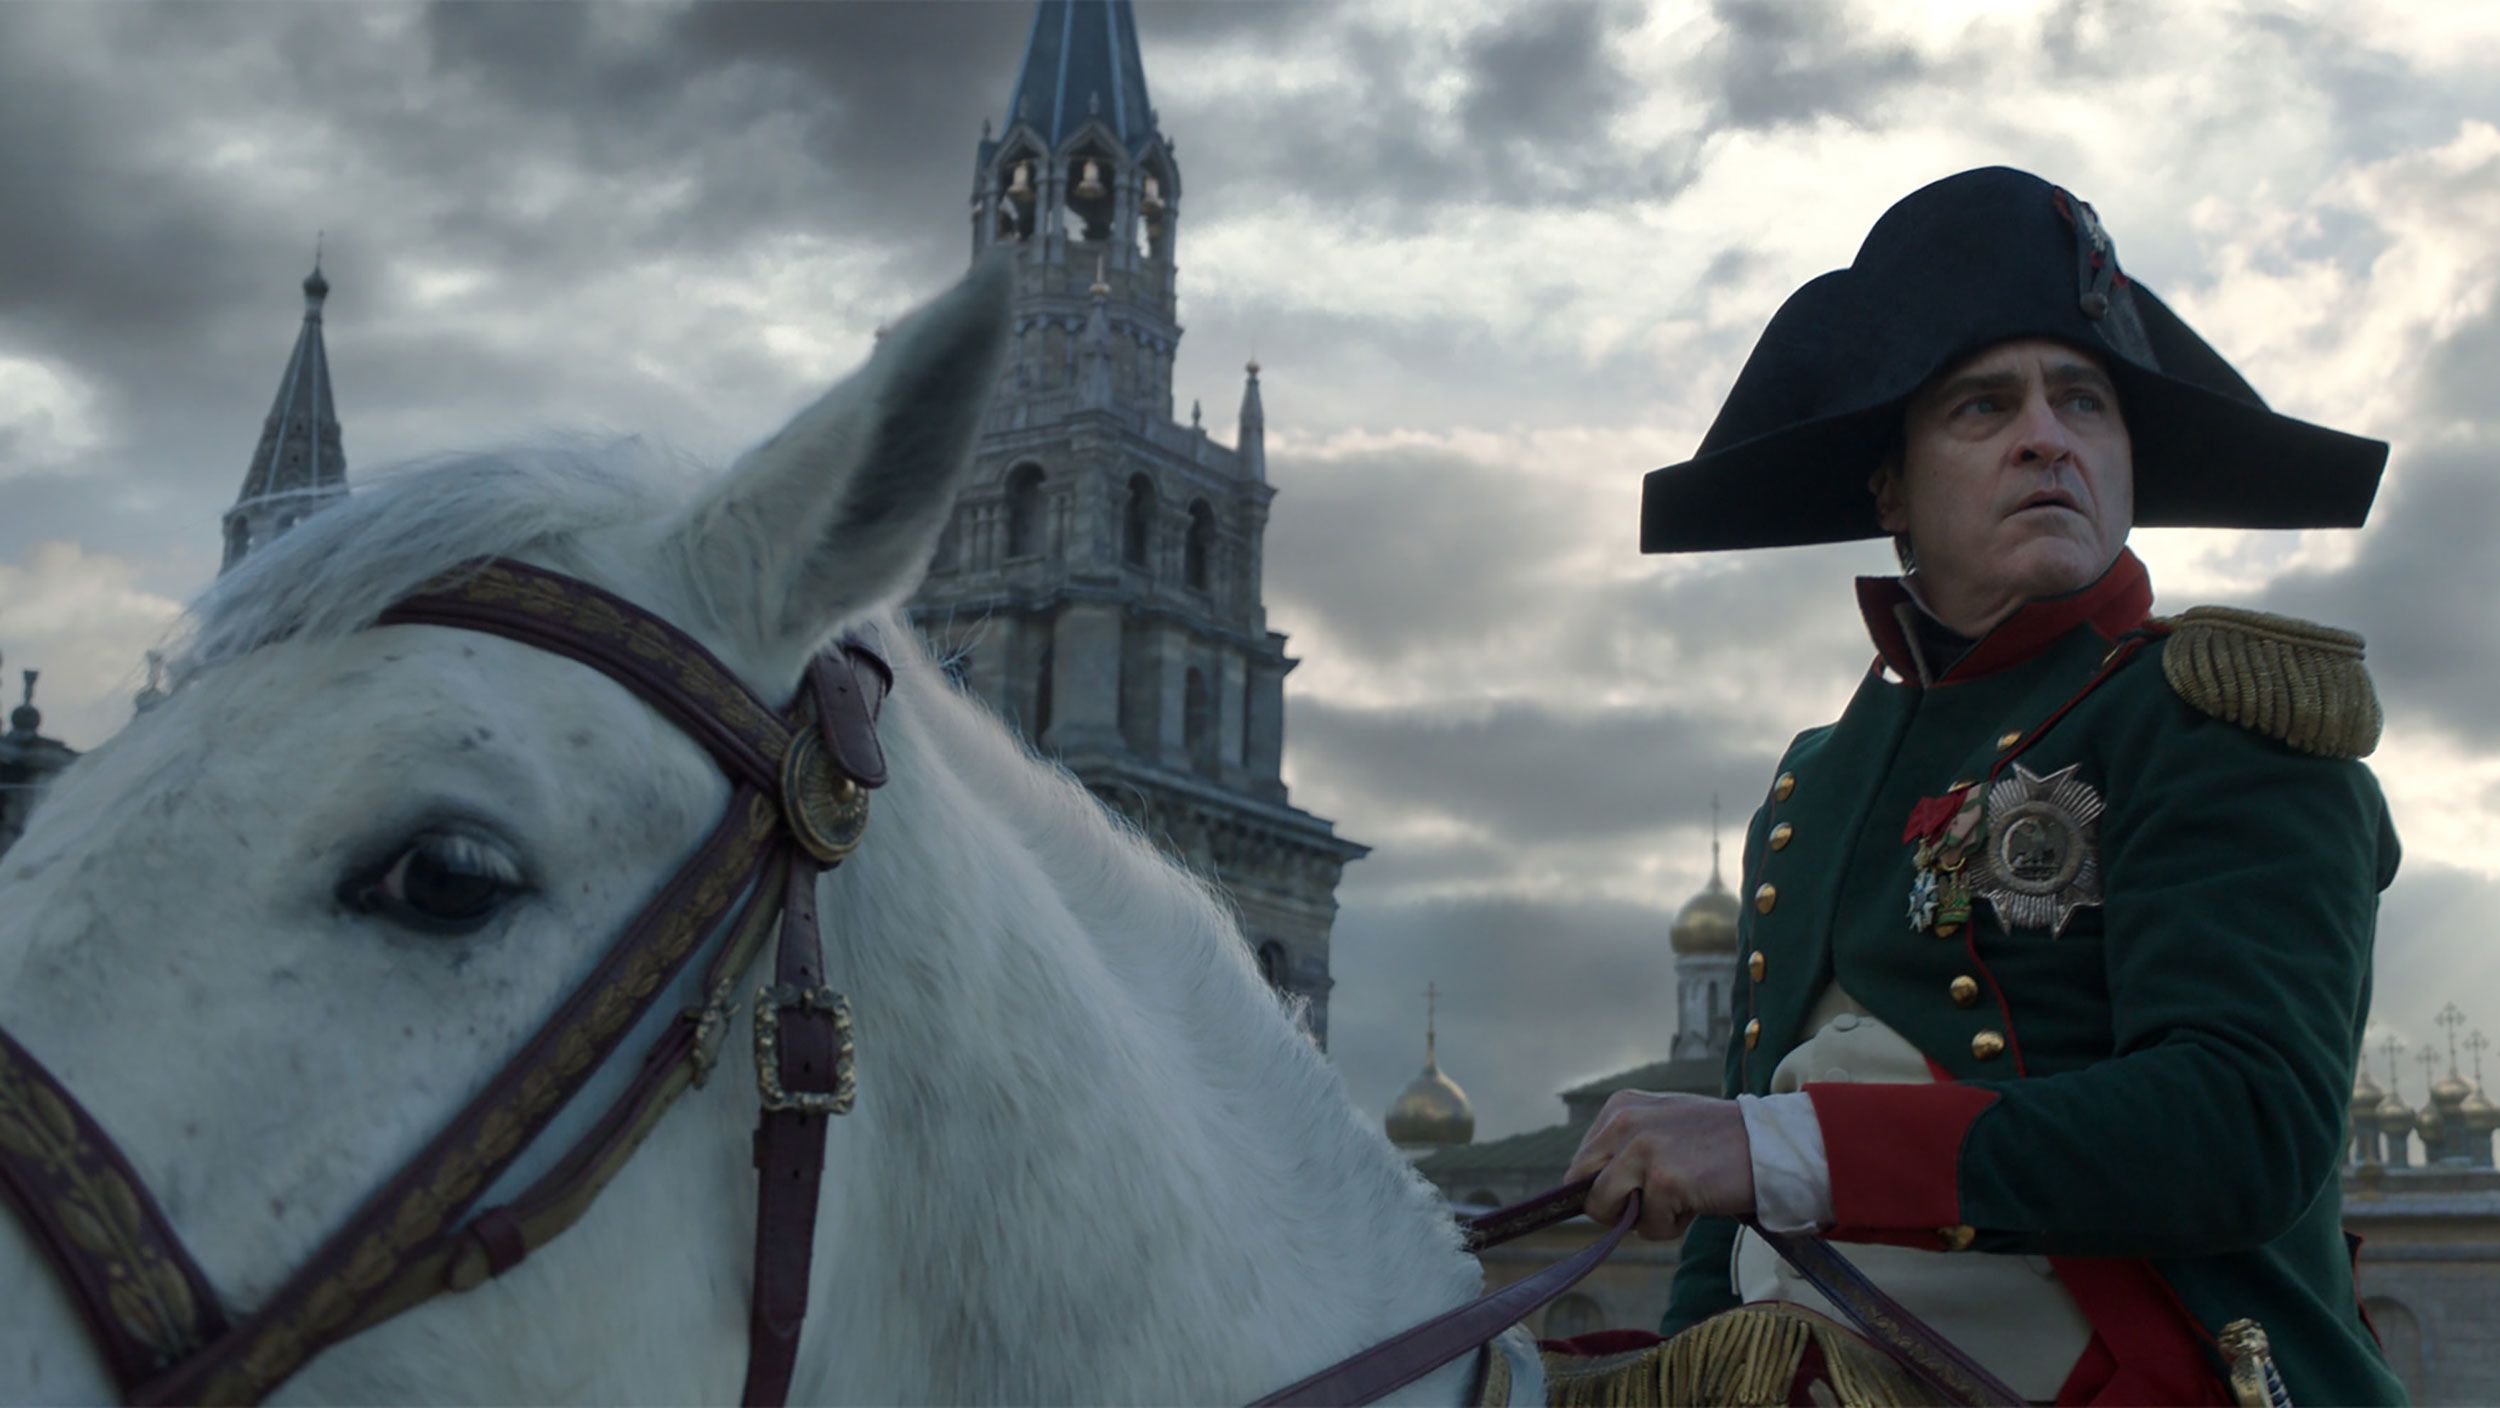 Κυκλοφόρησε το επίσημο τρέιλερ της ταινίας «Napoleon» με τον Χοακίν Φίνιξ